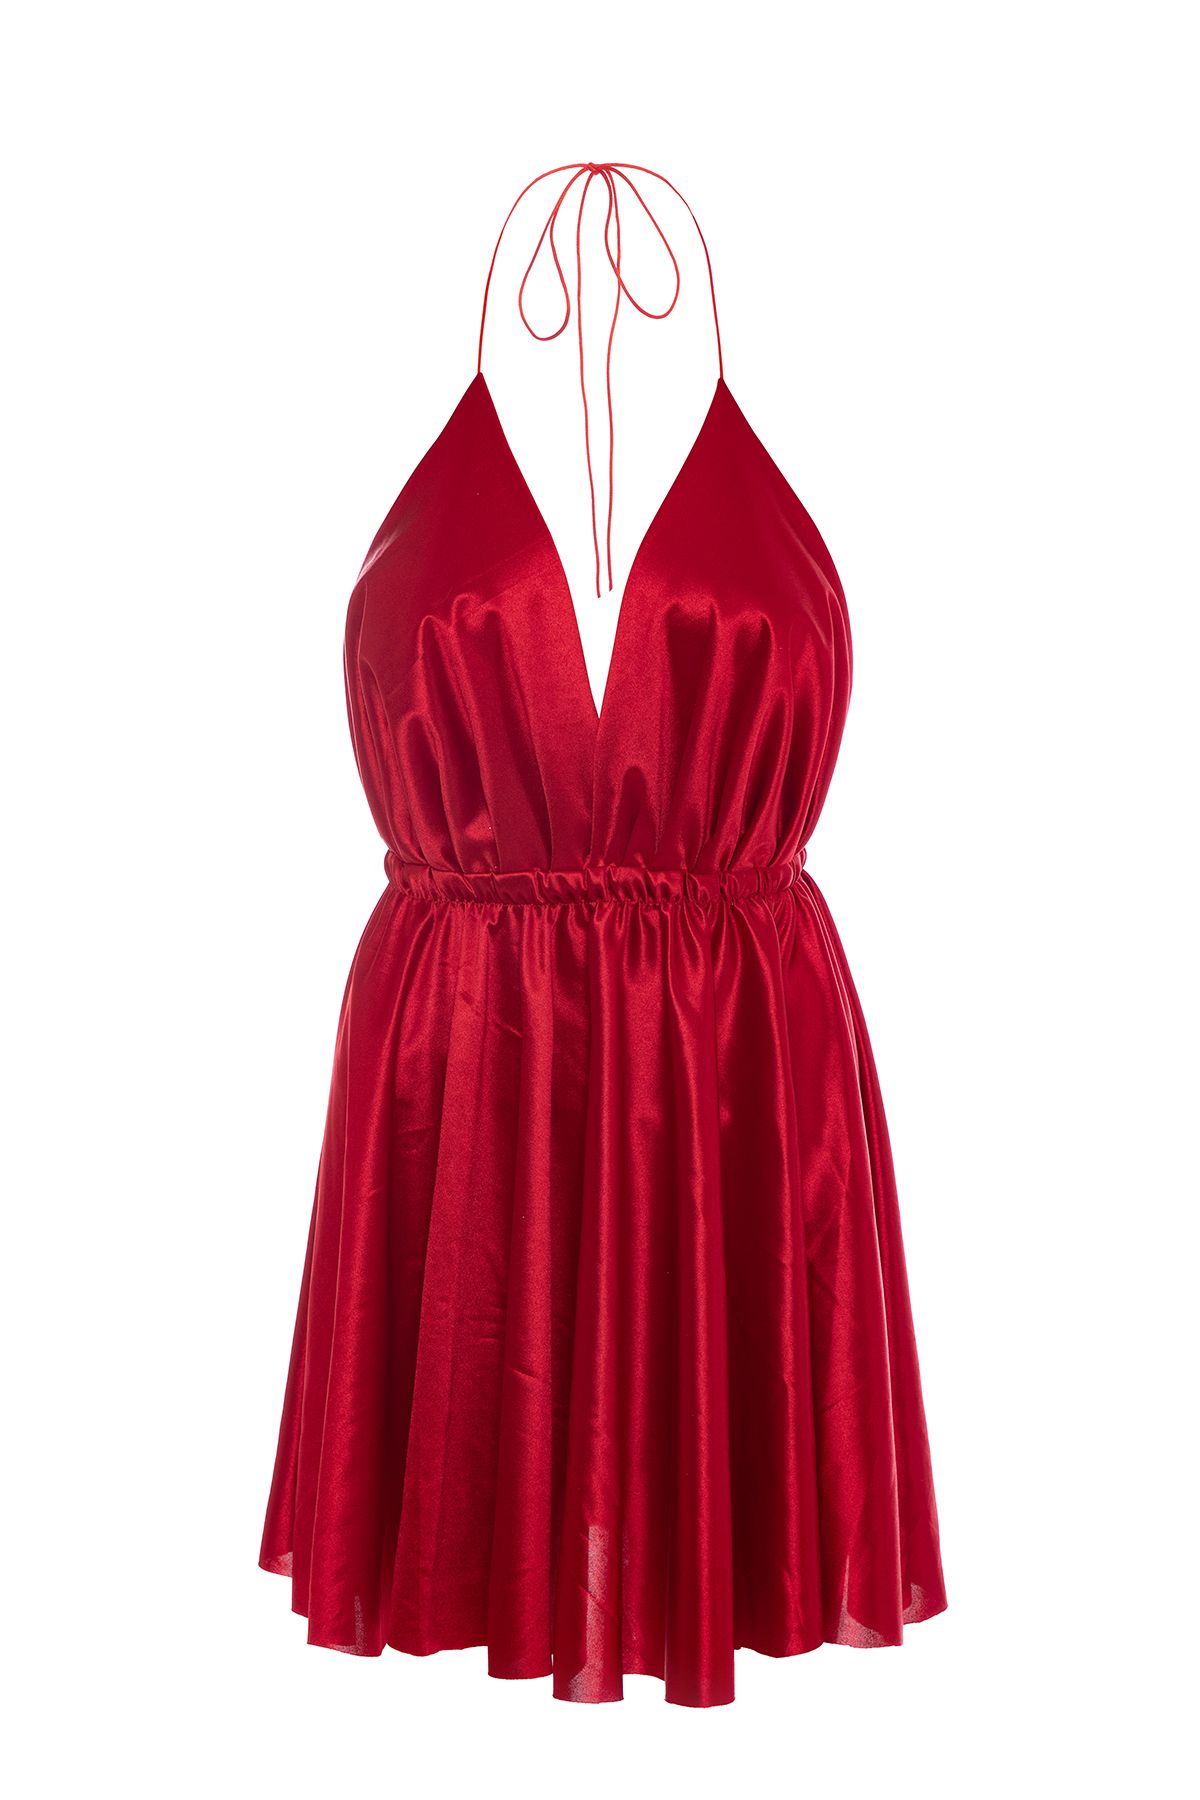 Gülşah Evecen Özel Tasarım Bluing Kırmızı Saten Kısa Elbise